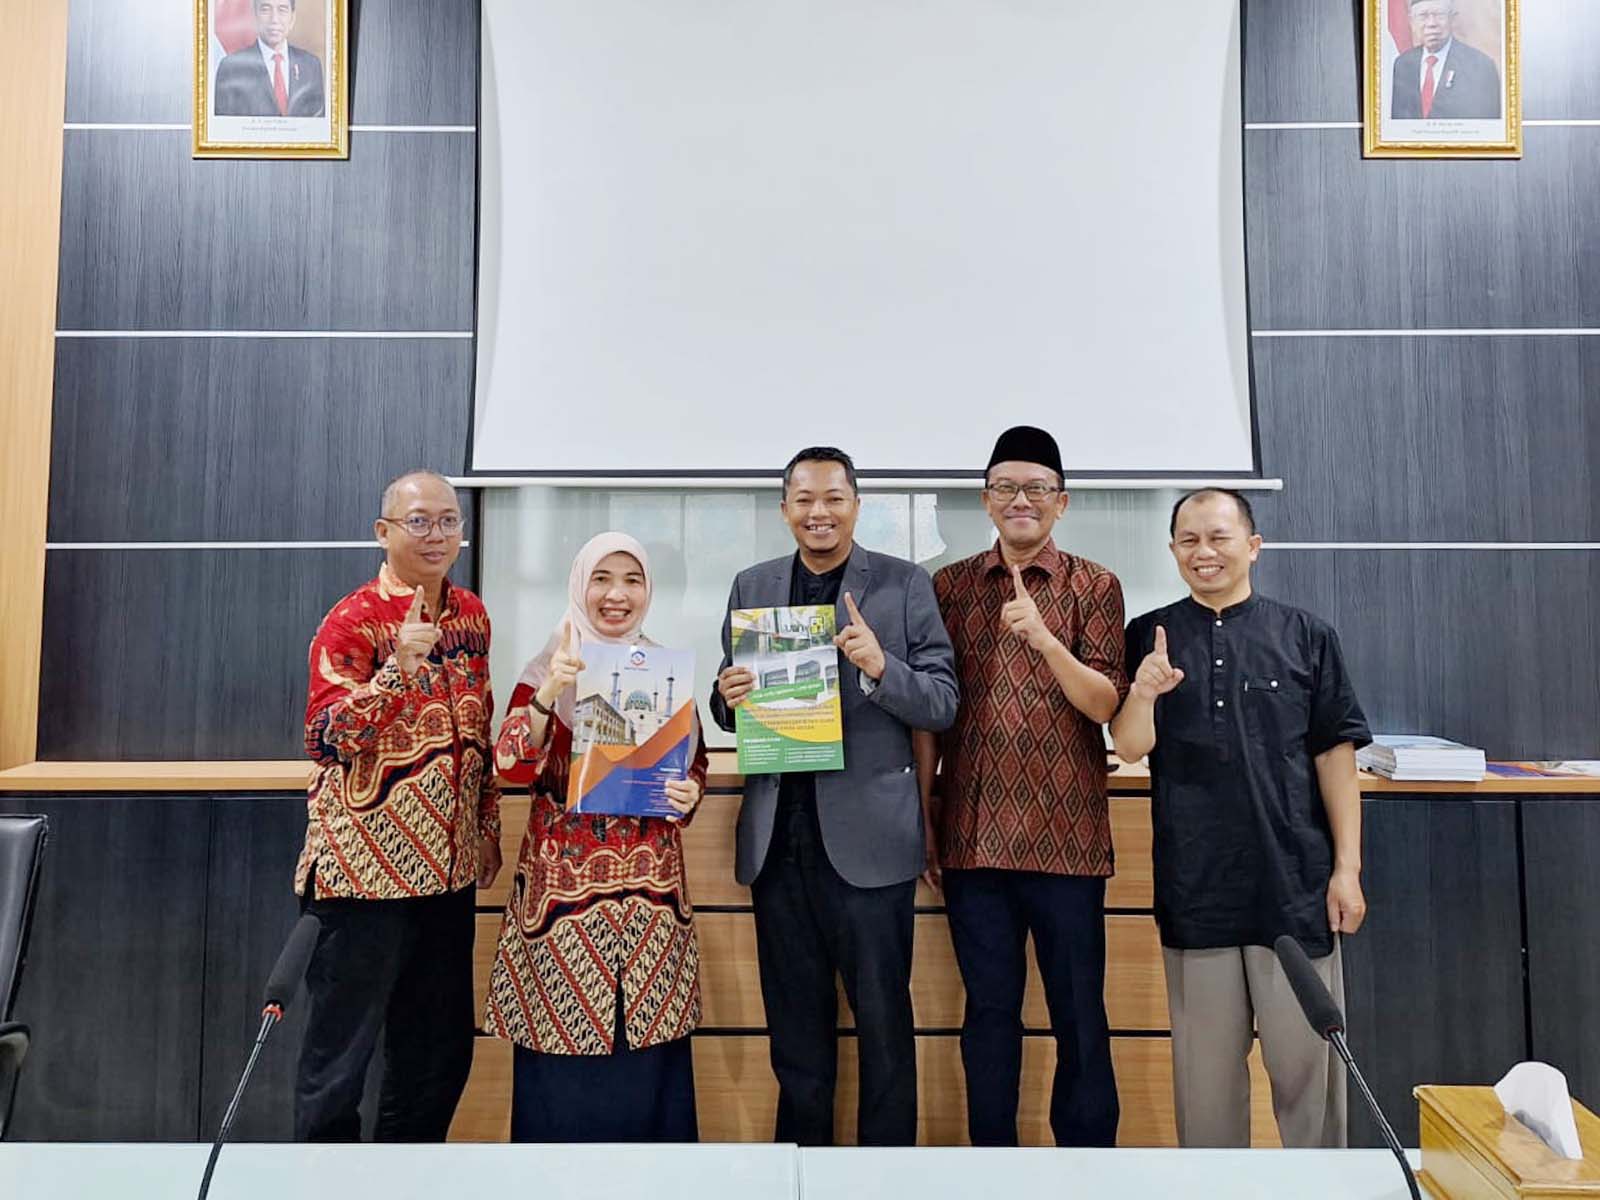 Kampus Tazkia Bogor telah menjalin kerjasama penting dengan FEBS untuk menginisiasi konferensi internasional melibatkan beberapa kampus terkemuka